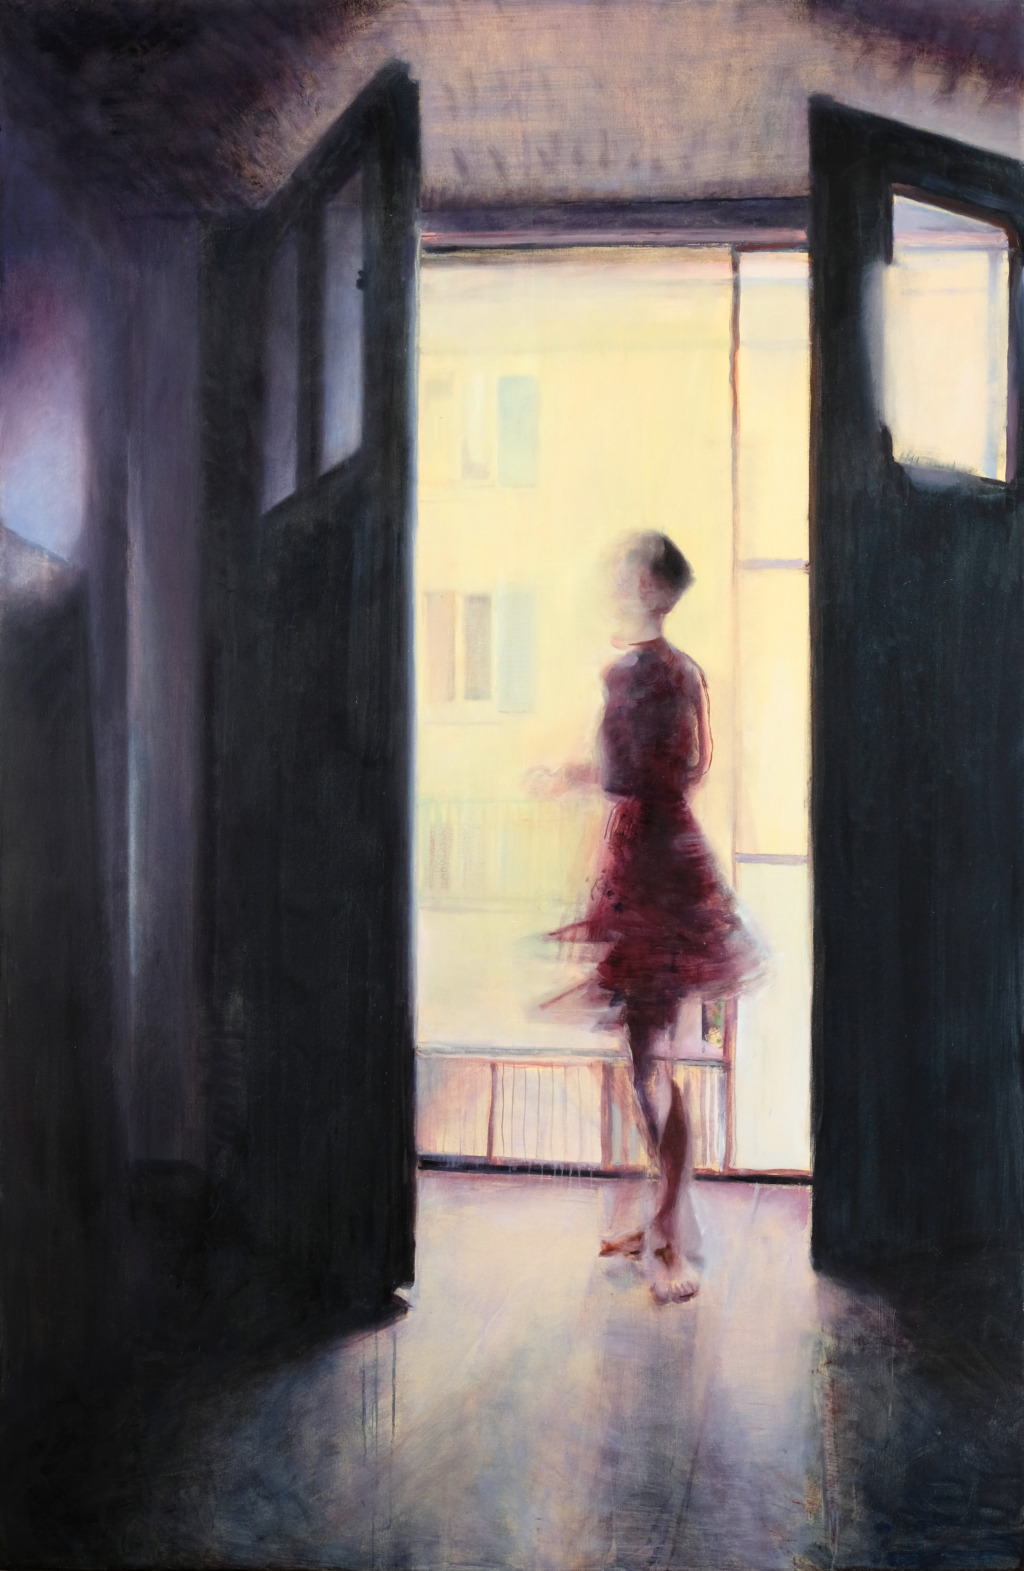 Andrea Muheim, Sommer 2020, 2021
Oil on canvas
200 x 130 cm